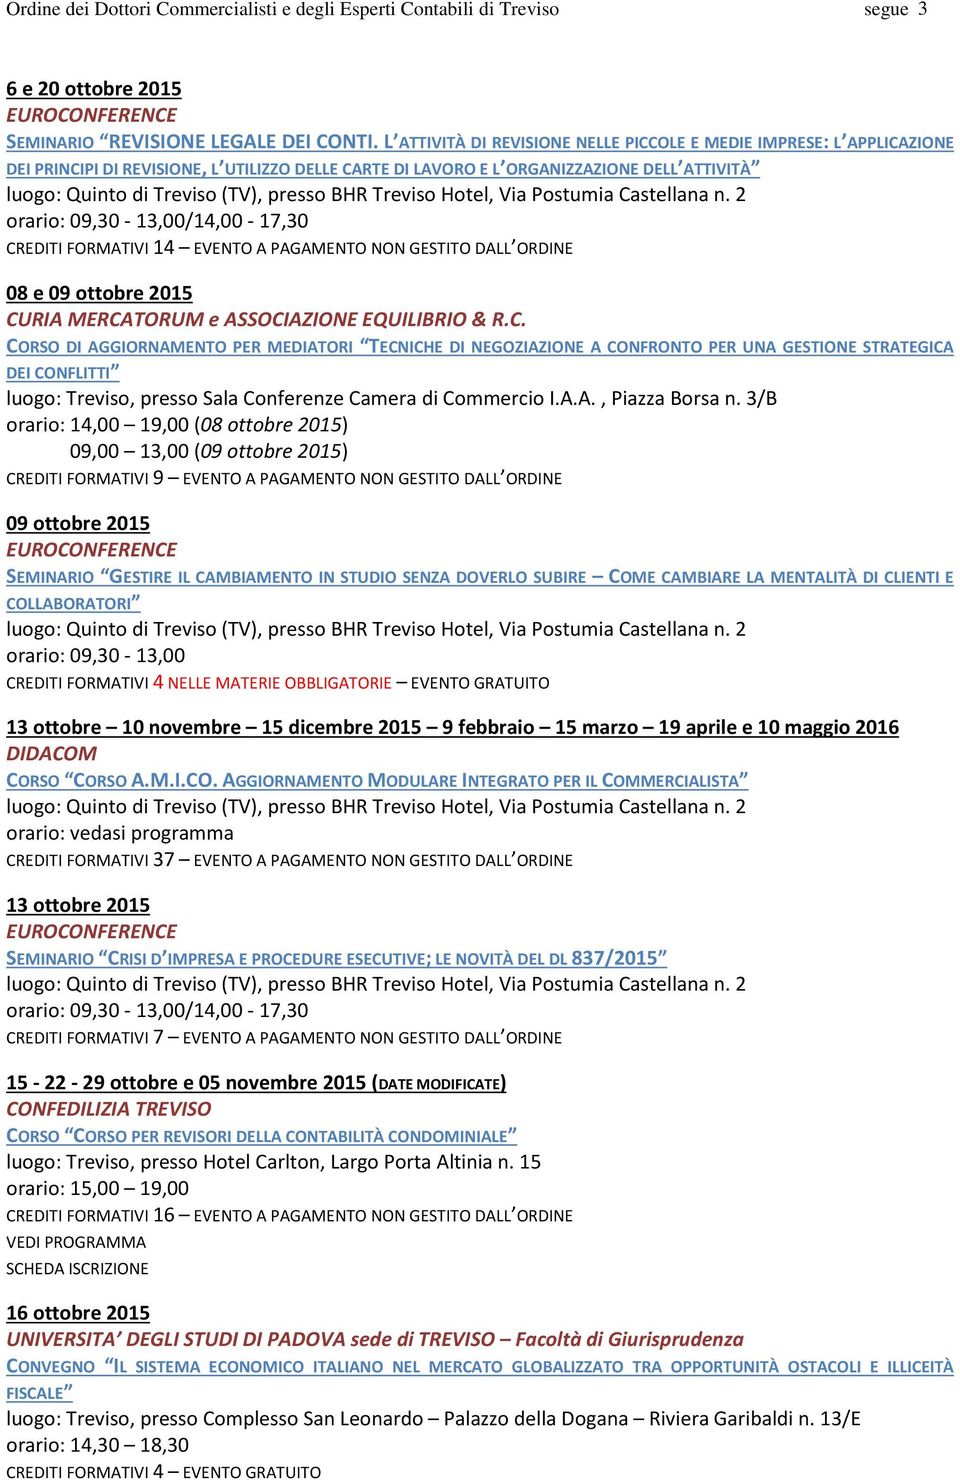 CREDITI FORMATIVI 14 EVENTO A PAGAMENTO NON GESTITO DALL ORDINE 08 e 09 ottobre 2015 CURIA MERCATORUM e ASSOCIAZIONE EQUILIBRIO & R.C. CORSO DI AGGIORNAMENTO PER MEDIATORI TECNICHE DI NEGOZIAZIONE A CONFRONTO PER UNA GESTIONE STRATEGICA DEI CONFLITTI luogo: Treviso, presso Sala Conferenze Camera di Commercio I.